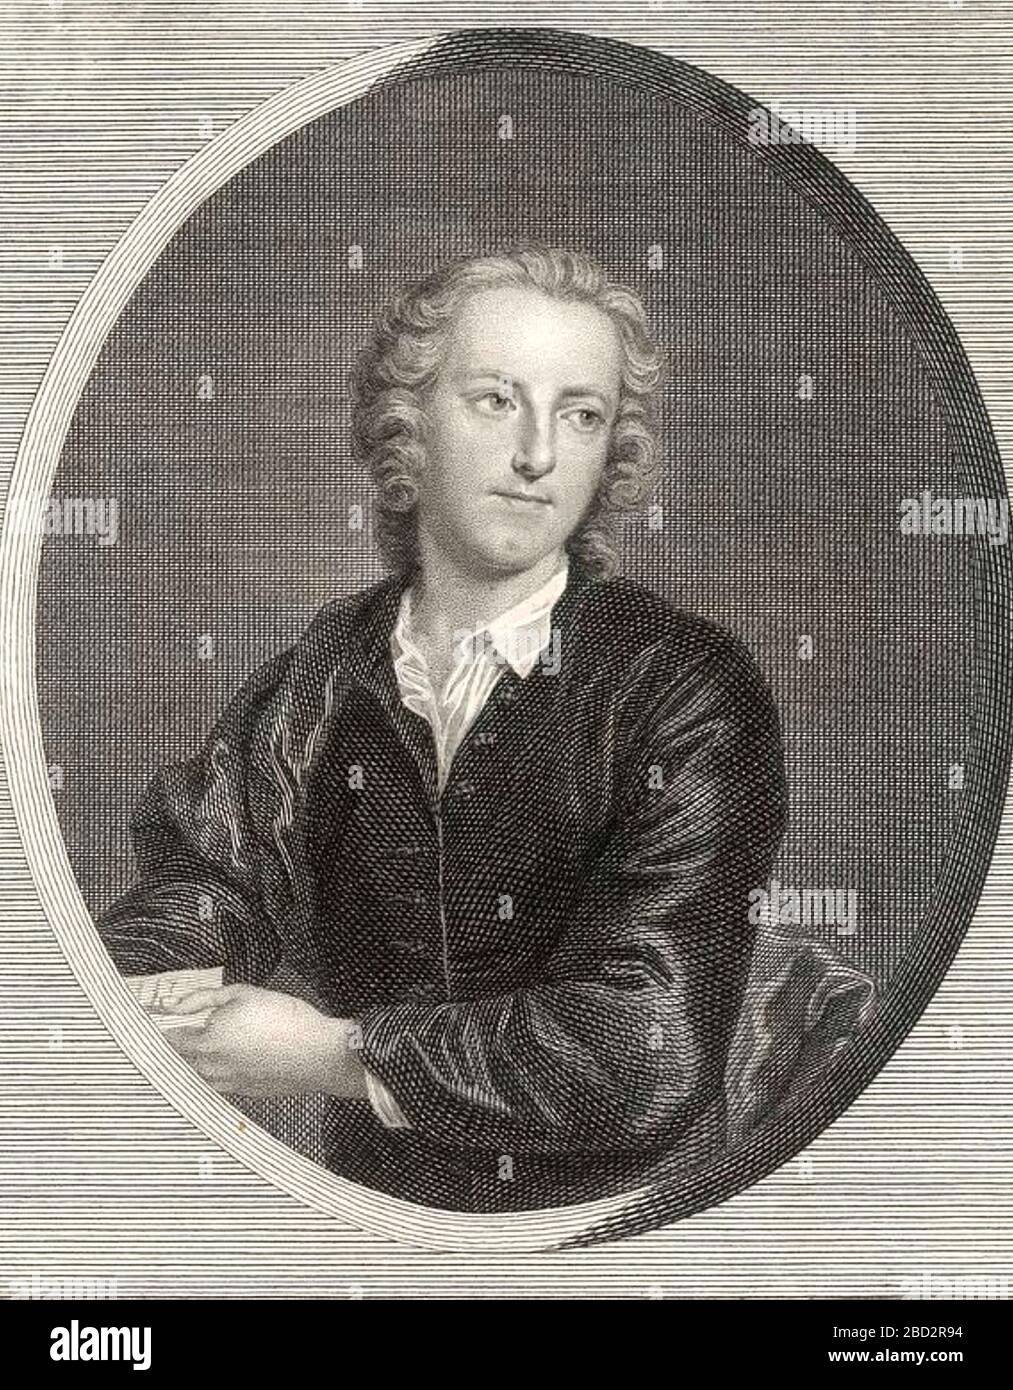 THOMAS GRAY (1716-171) englischer Dichter, klassischer Gelehrter, bekannt für seine Elegie, die in einem Country Churchyard geschrieben wurde. Stockfoto